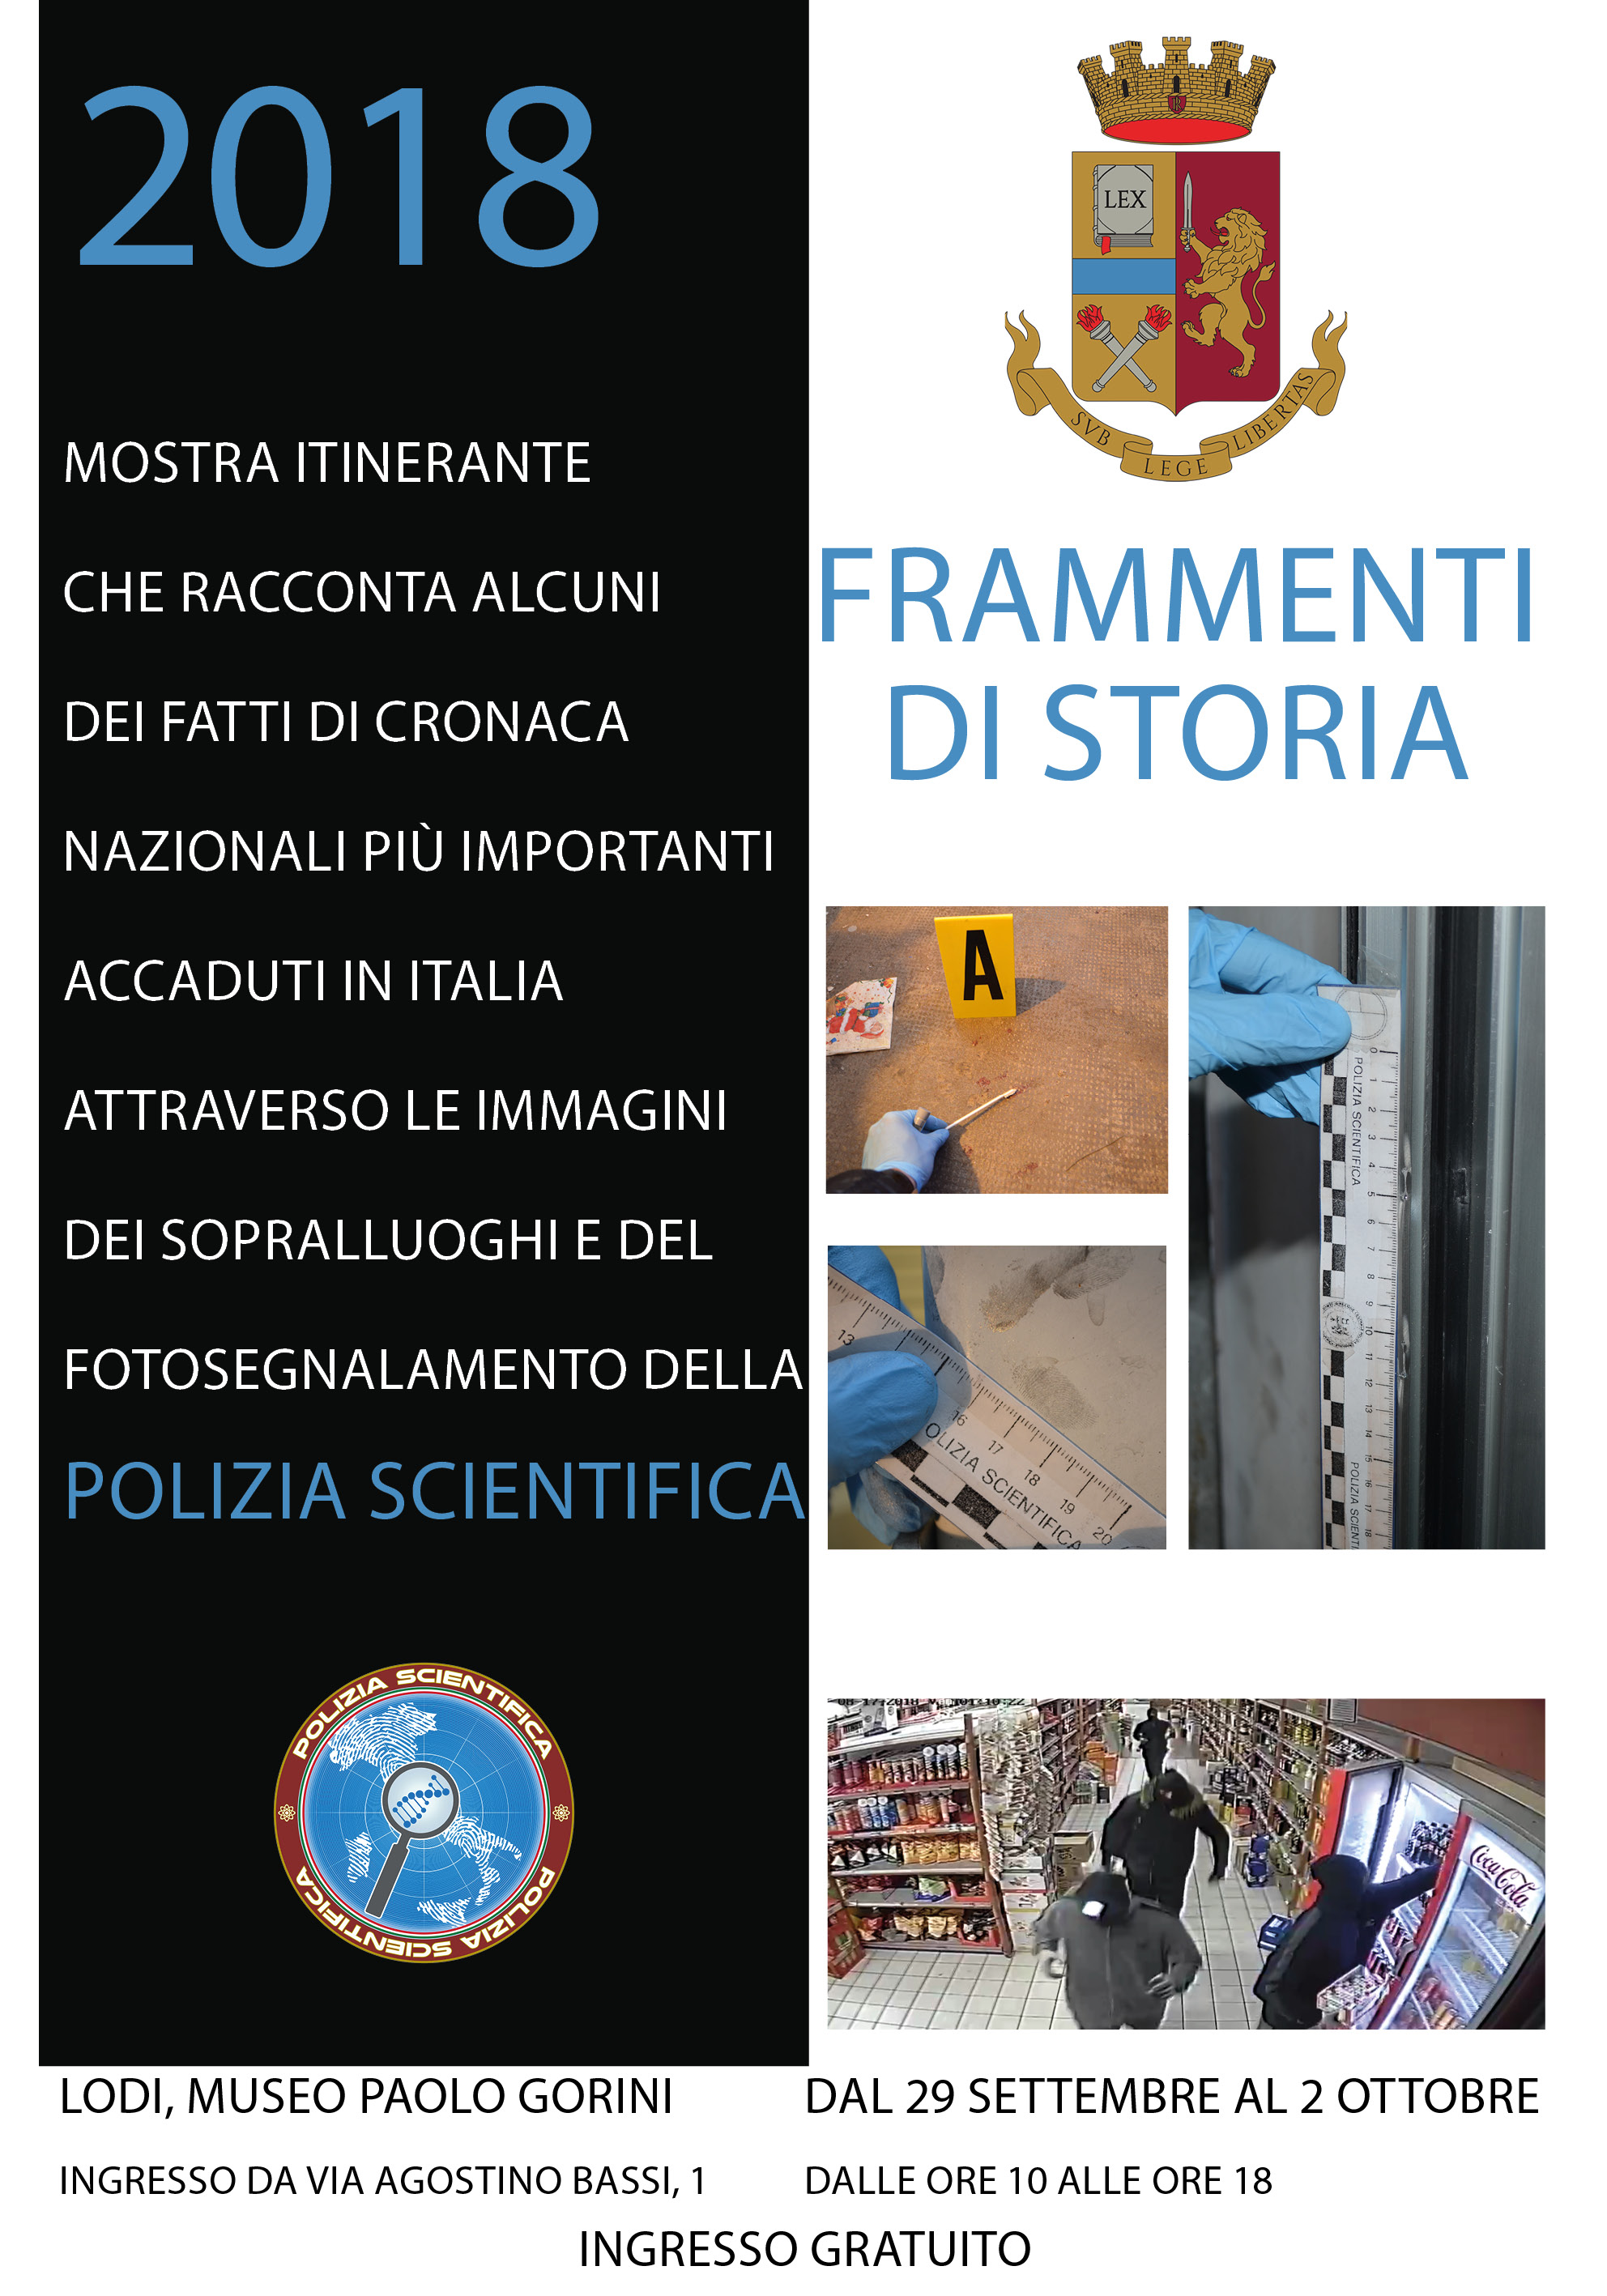 “Frammenti di Storia - l'Italia attraverso le impronte, le immagini e i sopralluoghi della Polizia Scientifica